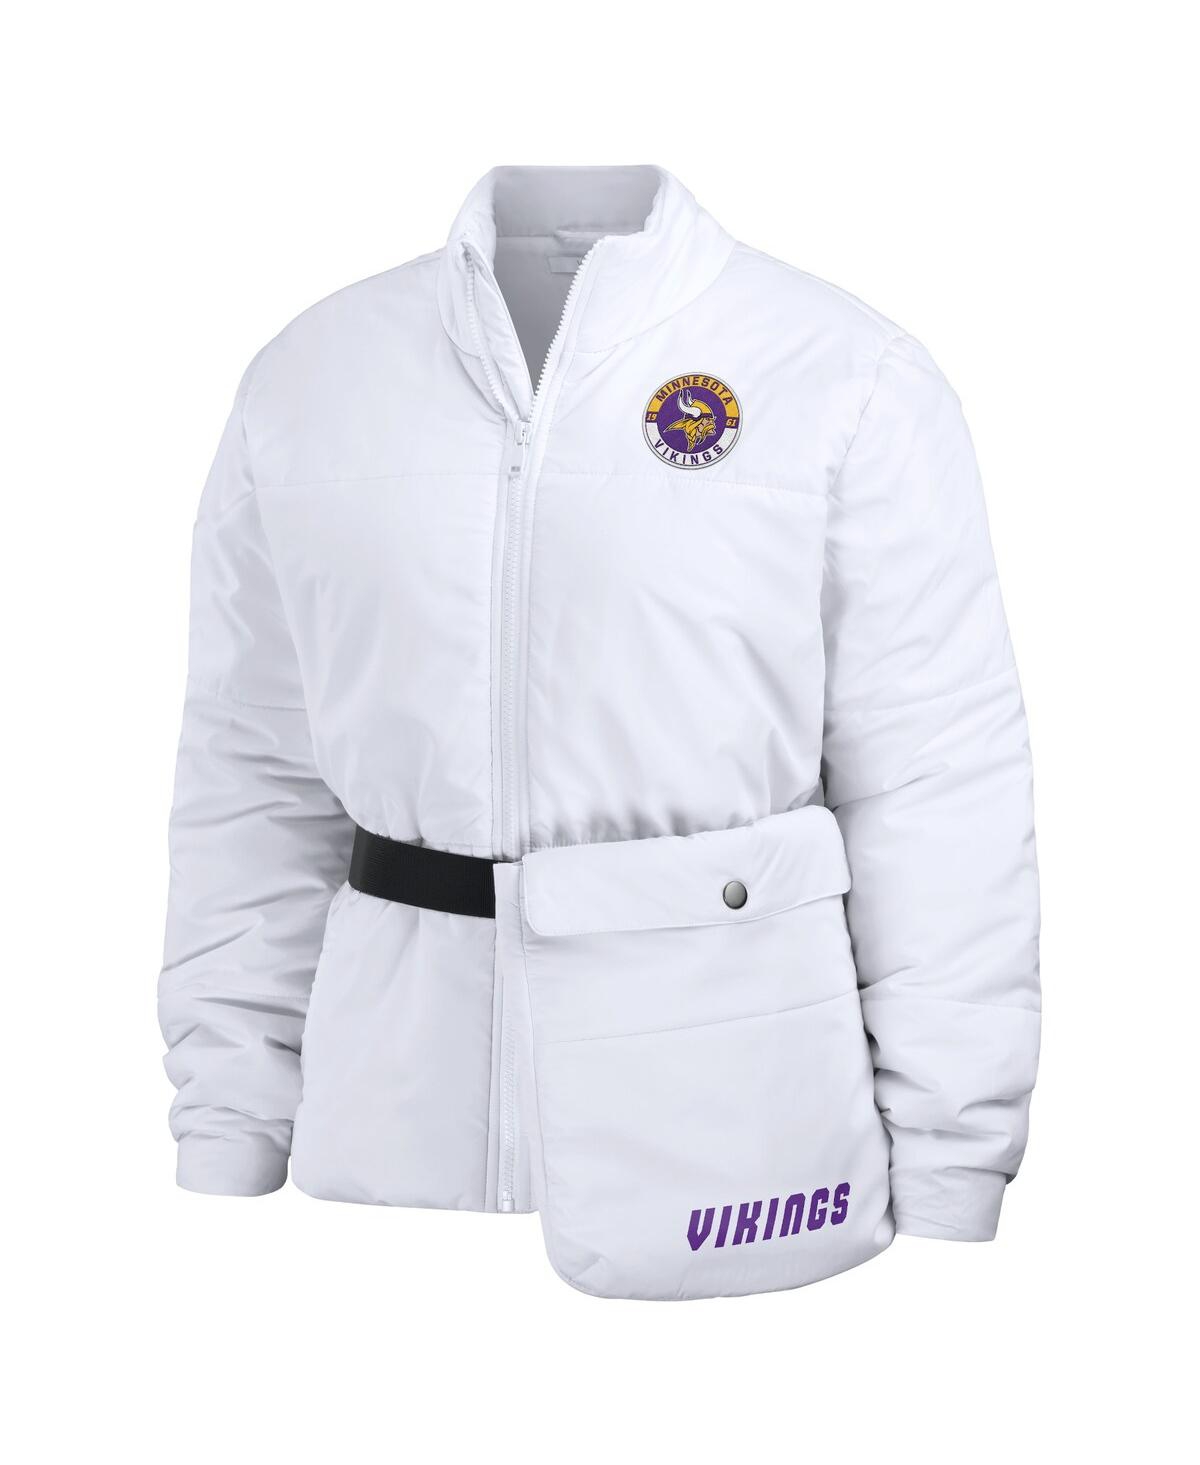 Shop Wear By Erin Andrews Women's  White Minnesota Vikings Packaway Full-zip Puffer Jacket